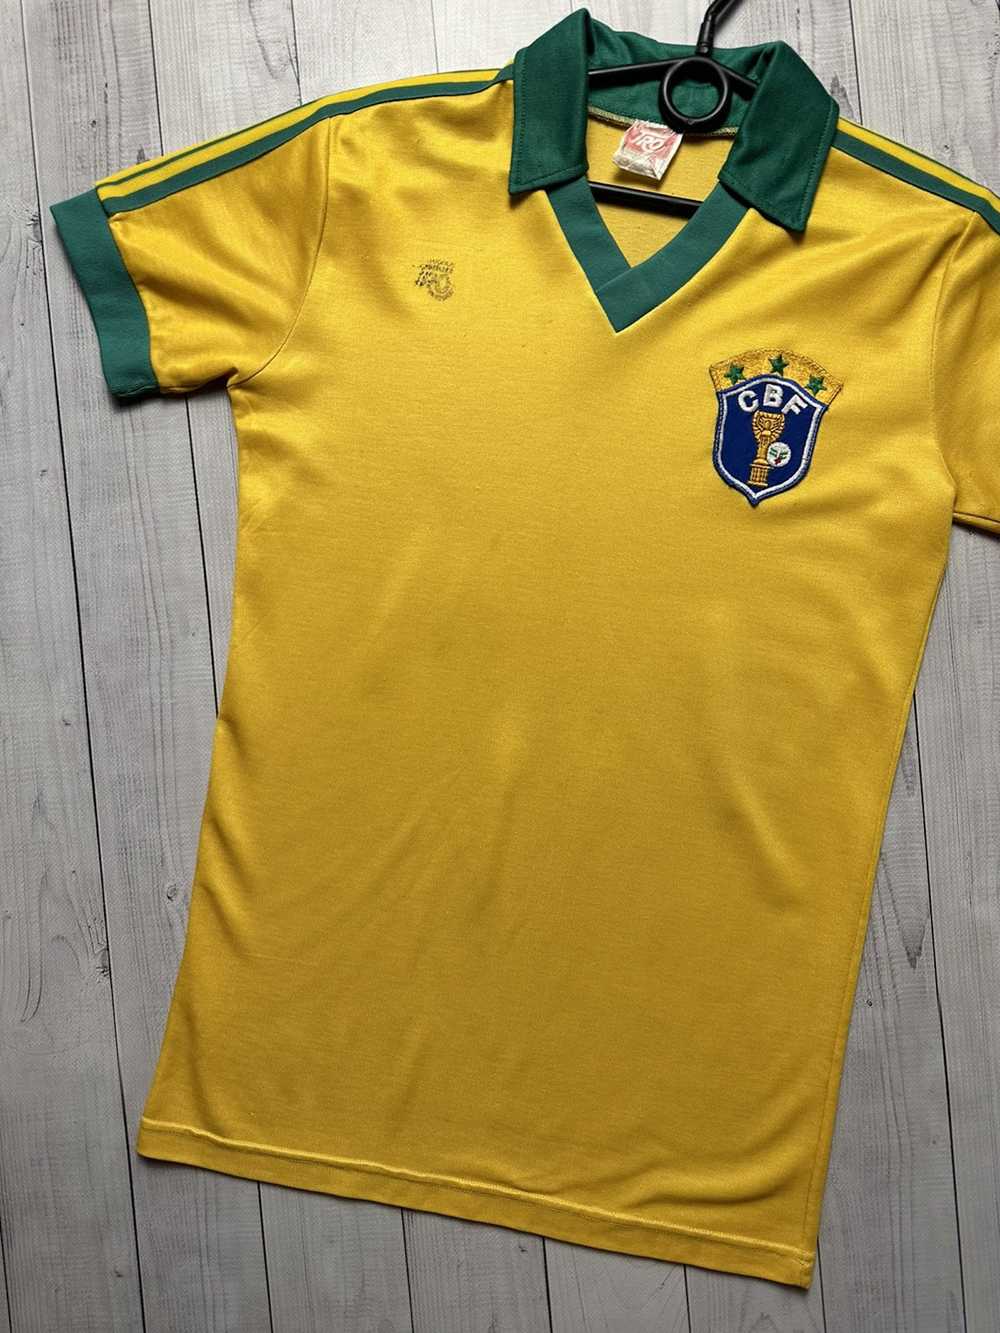 Soccer Jersey × Vintage Vintage Brazil soccer jer… - image 2